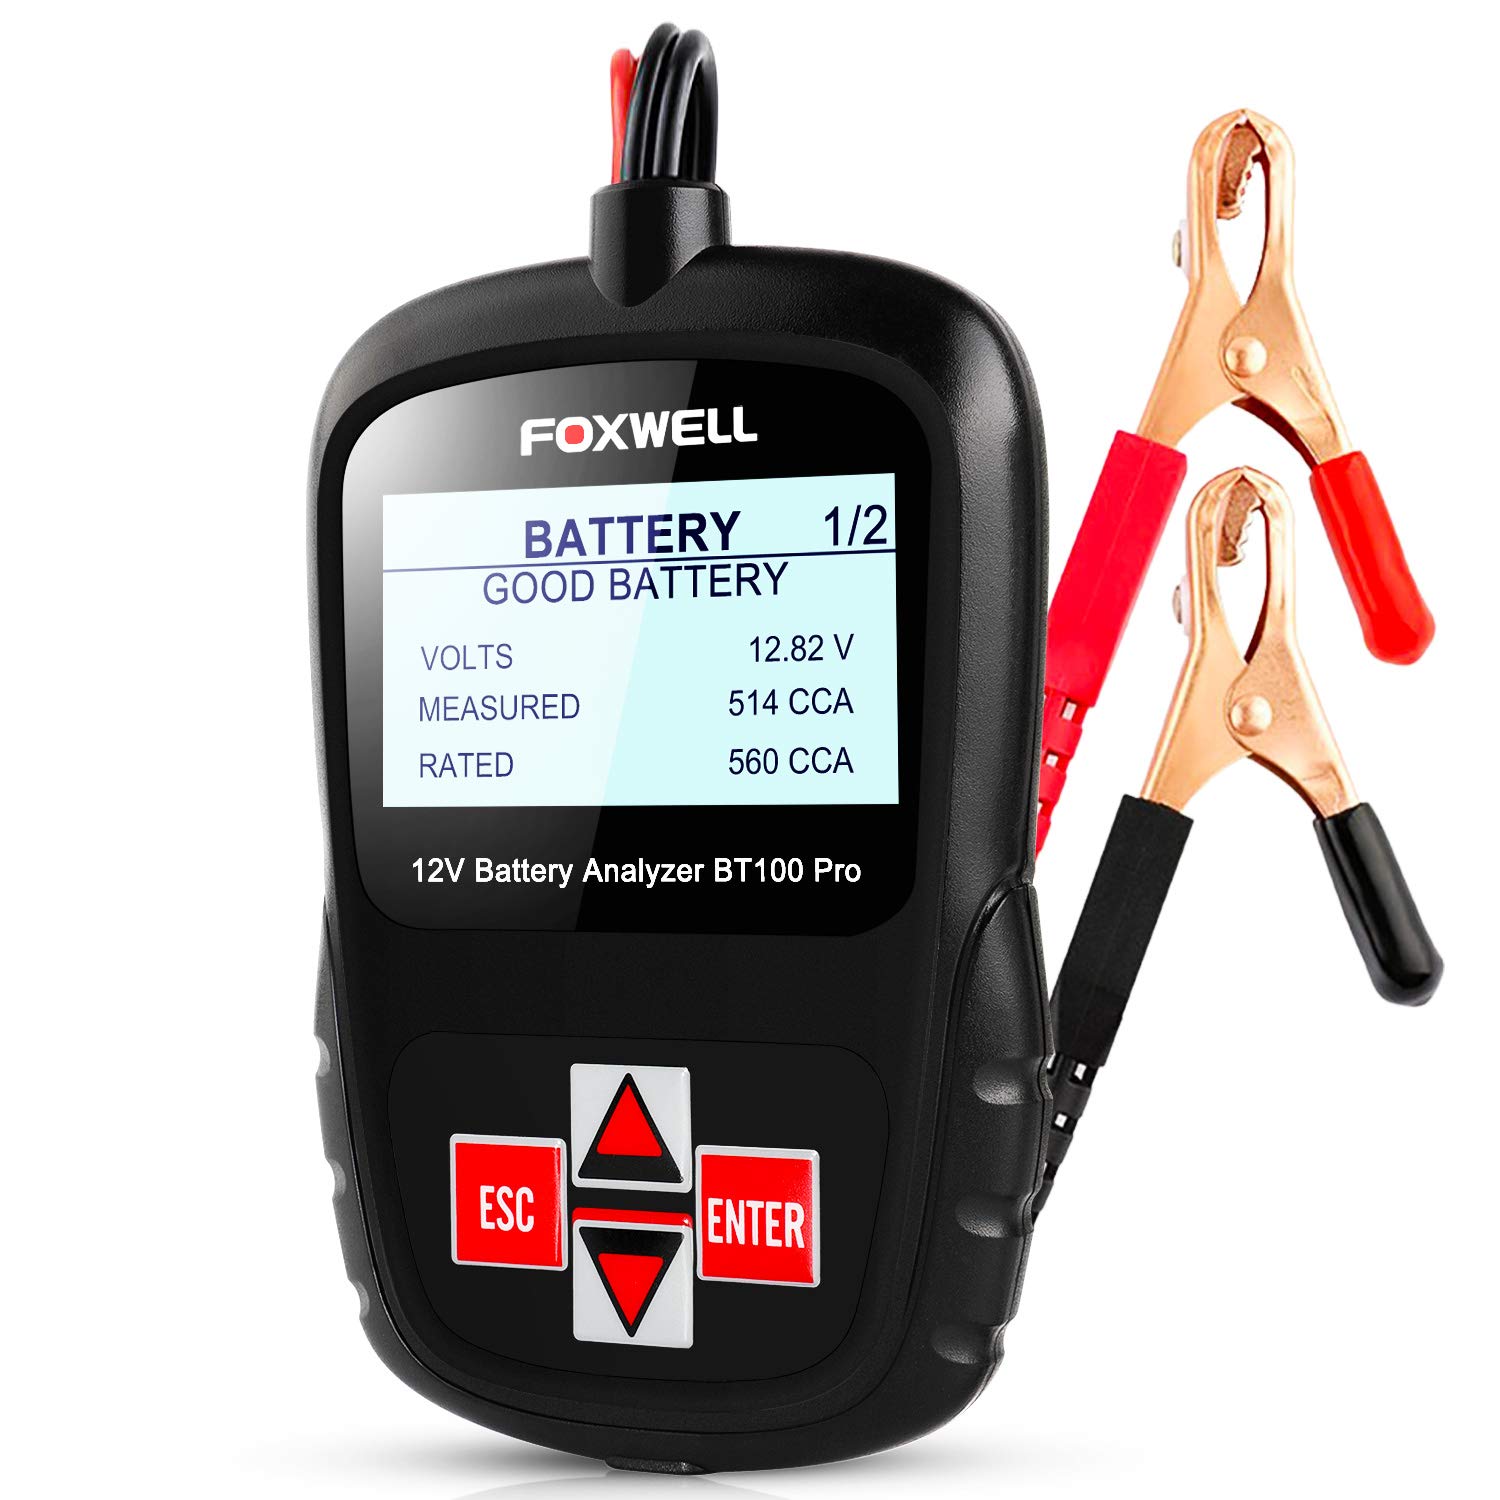 FOXWELL Battery Tester BT100 Pro